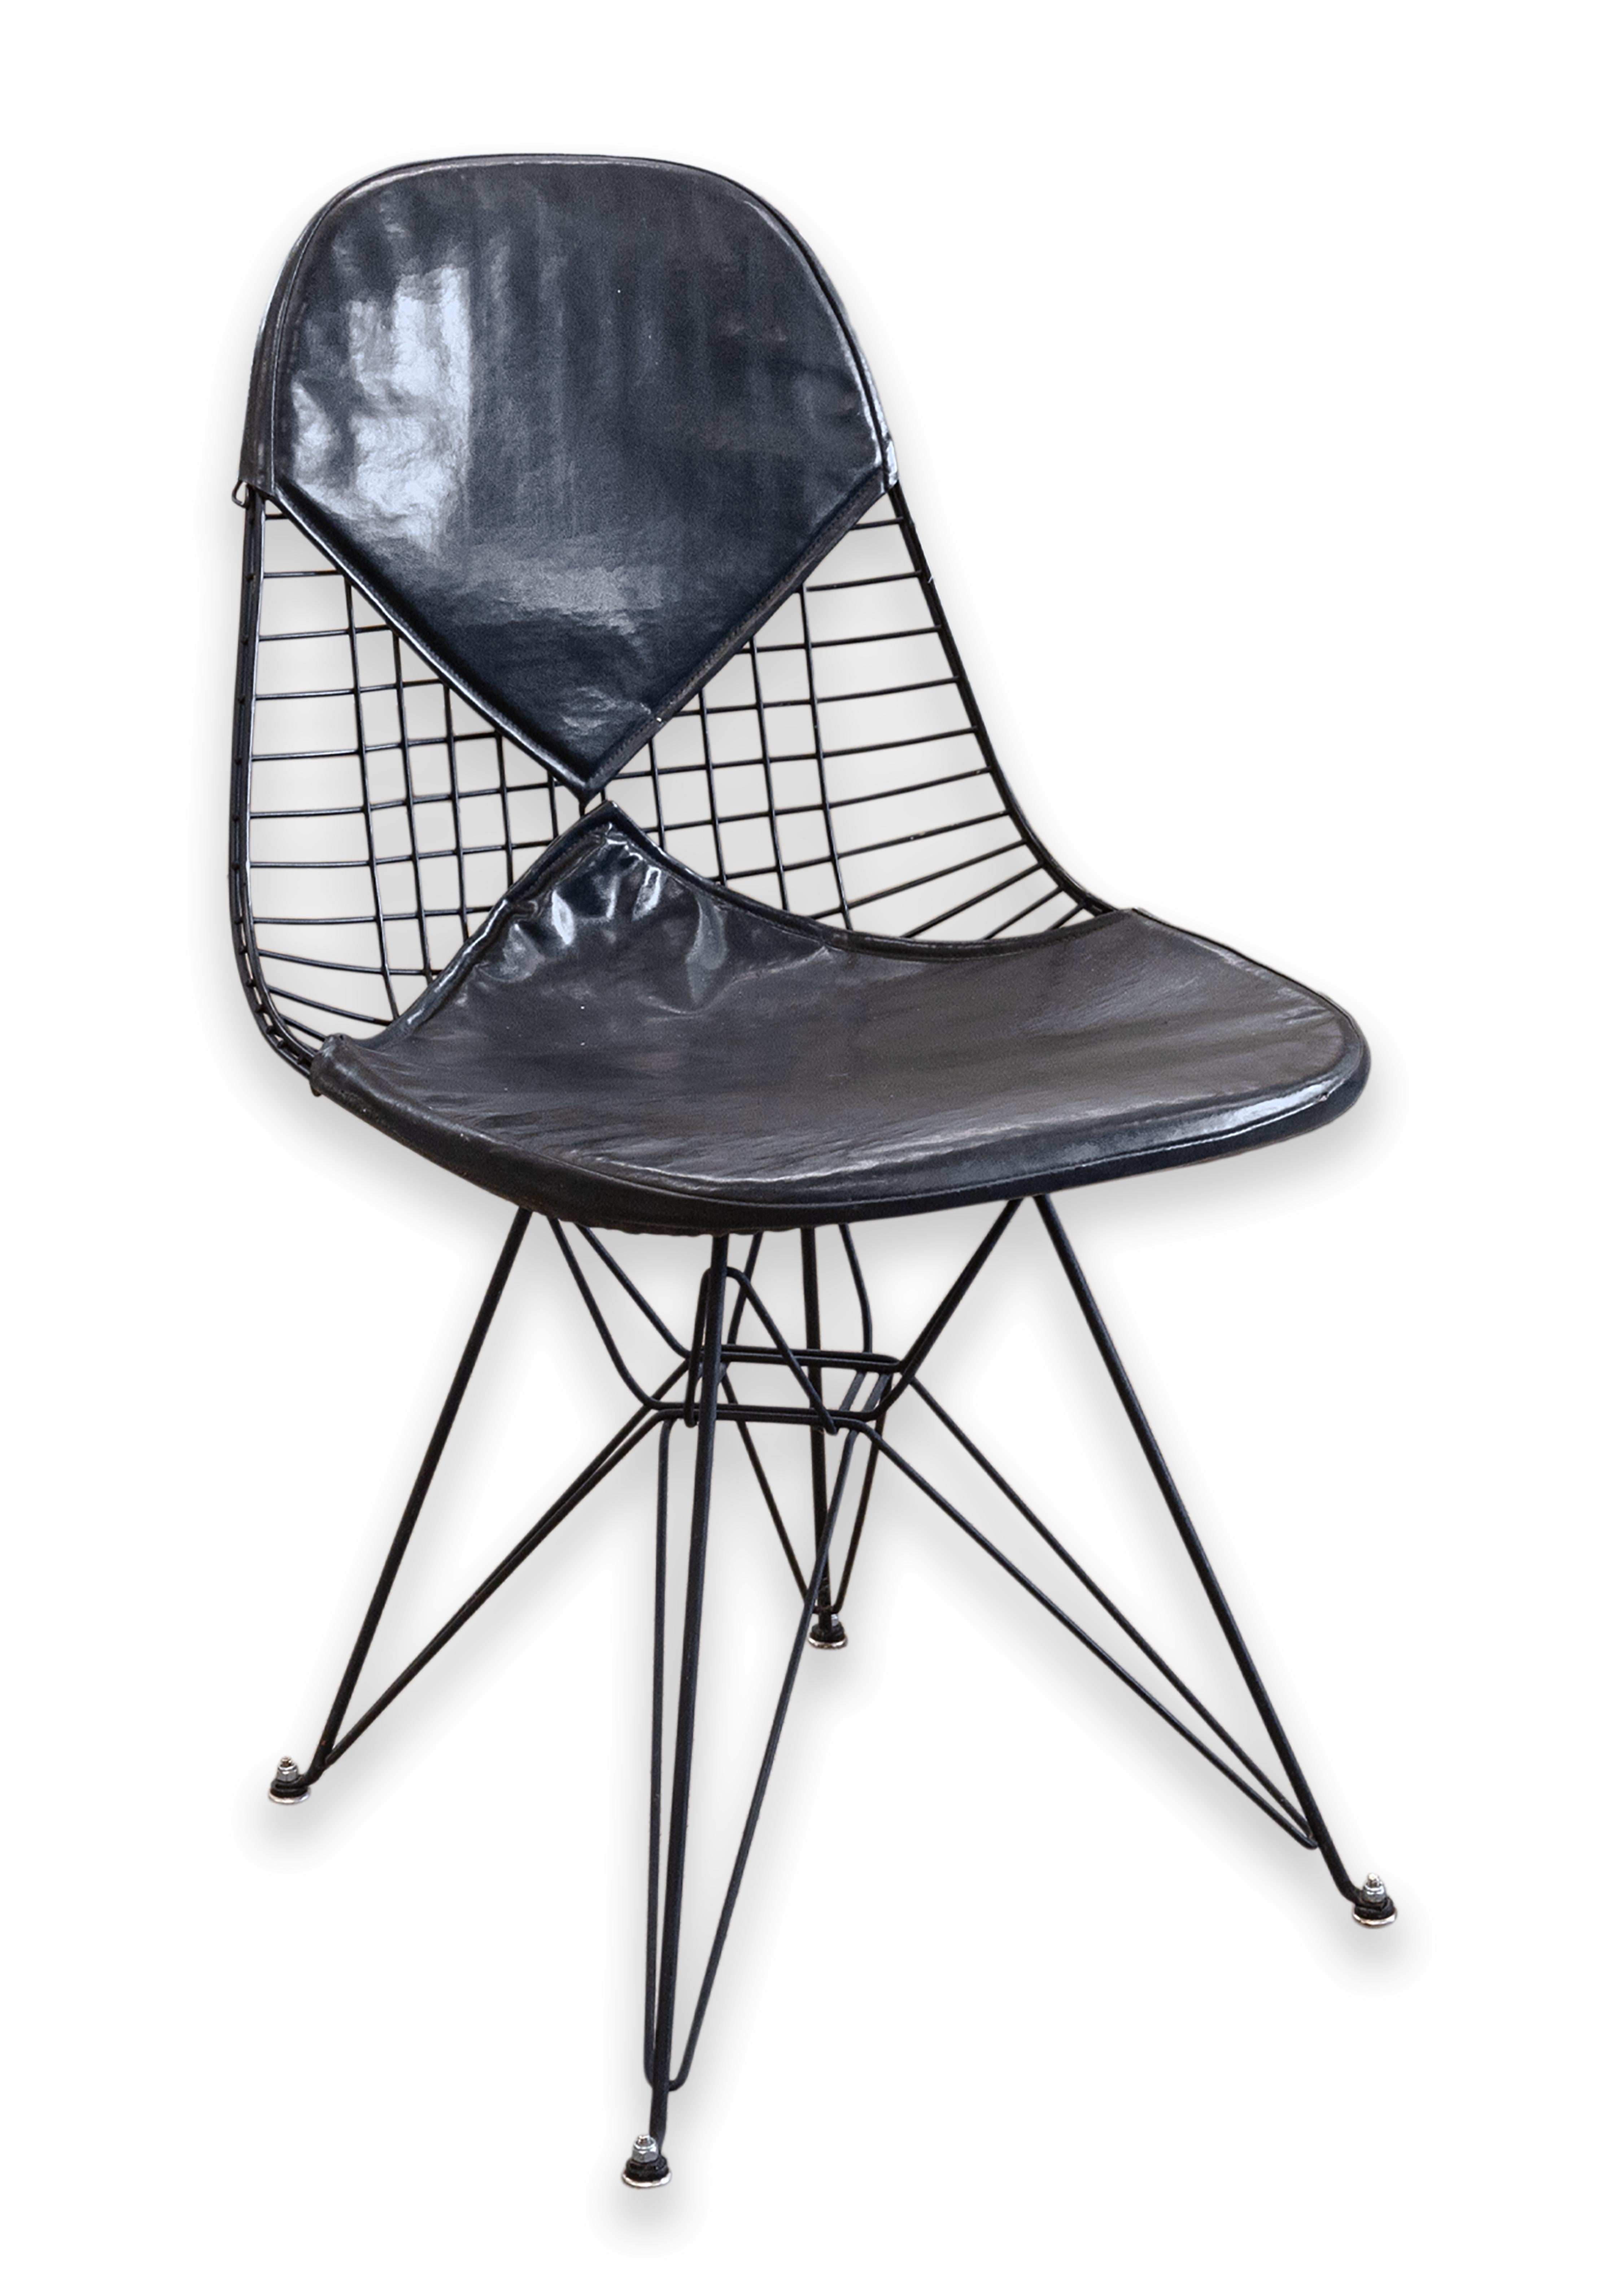 Chaise Eames Herman Miller DKR-2 en fil de fer de la première génération de la Tour Eiffel. Une chaise véritablement emblématique de l'ère moderne du milieu du siècle dernier. Cette pièce possède le cadre métallique emblématique avec une finition